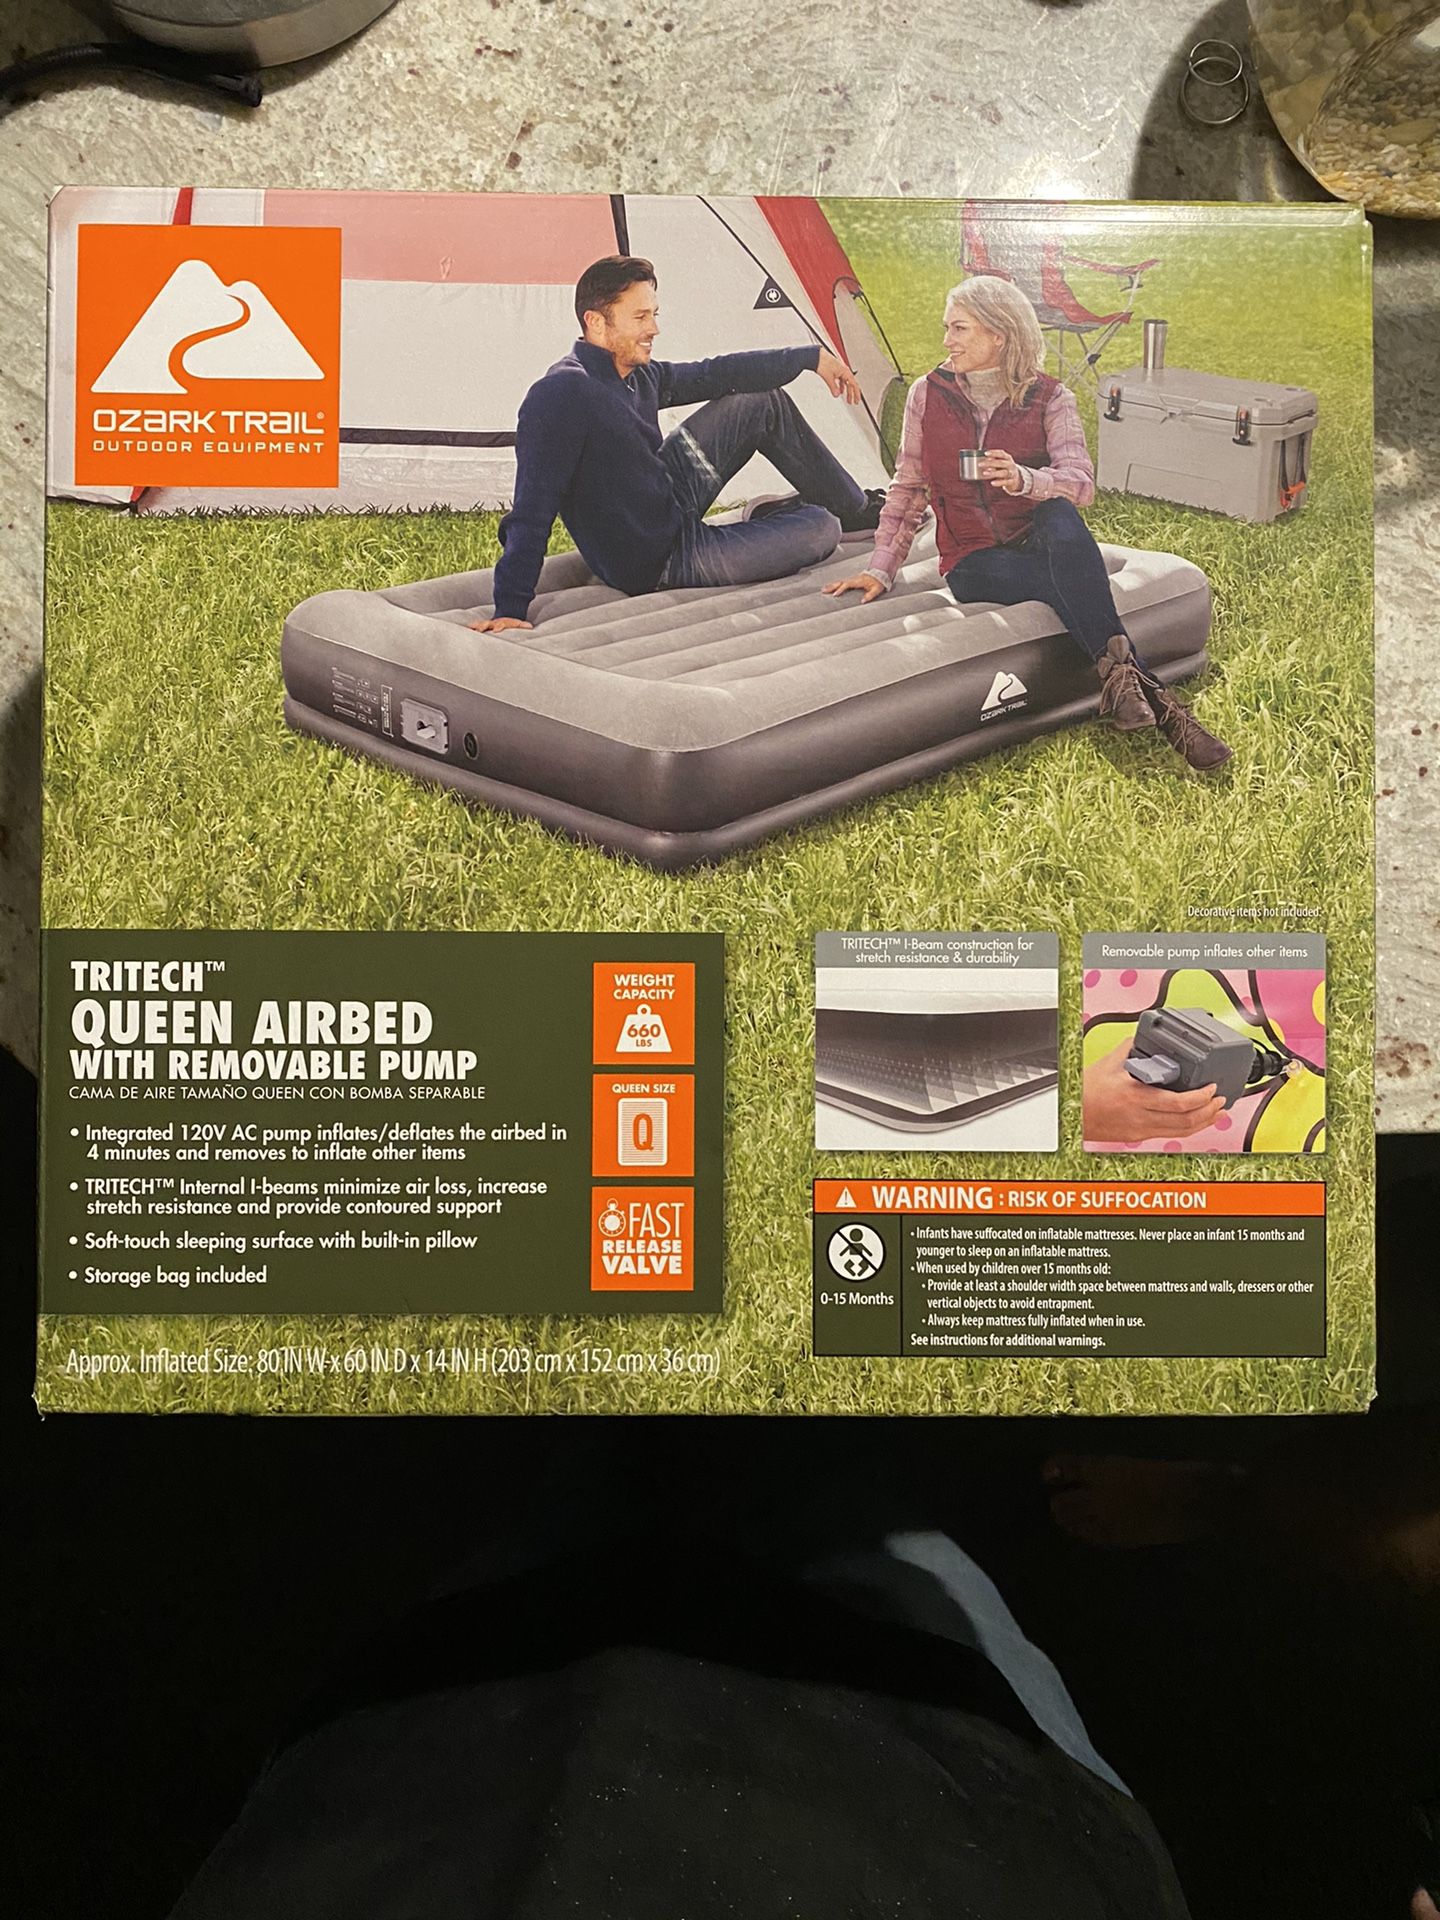 Ozark trail Air mattress